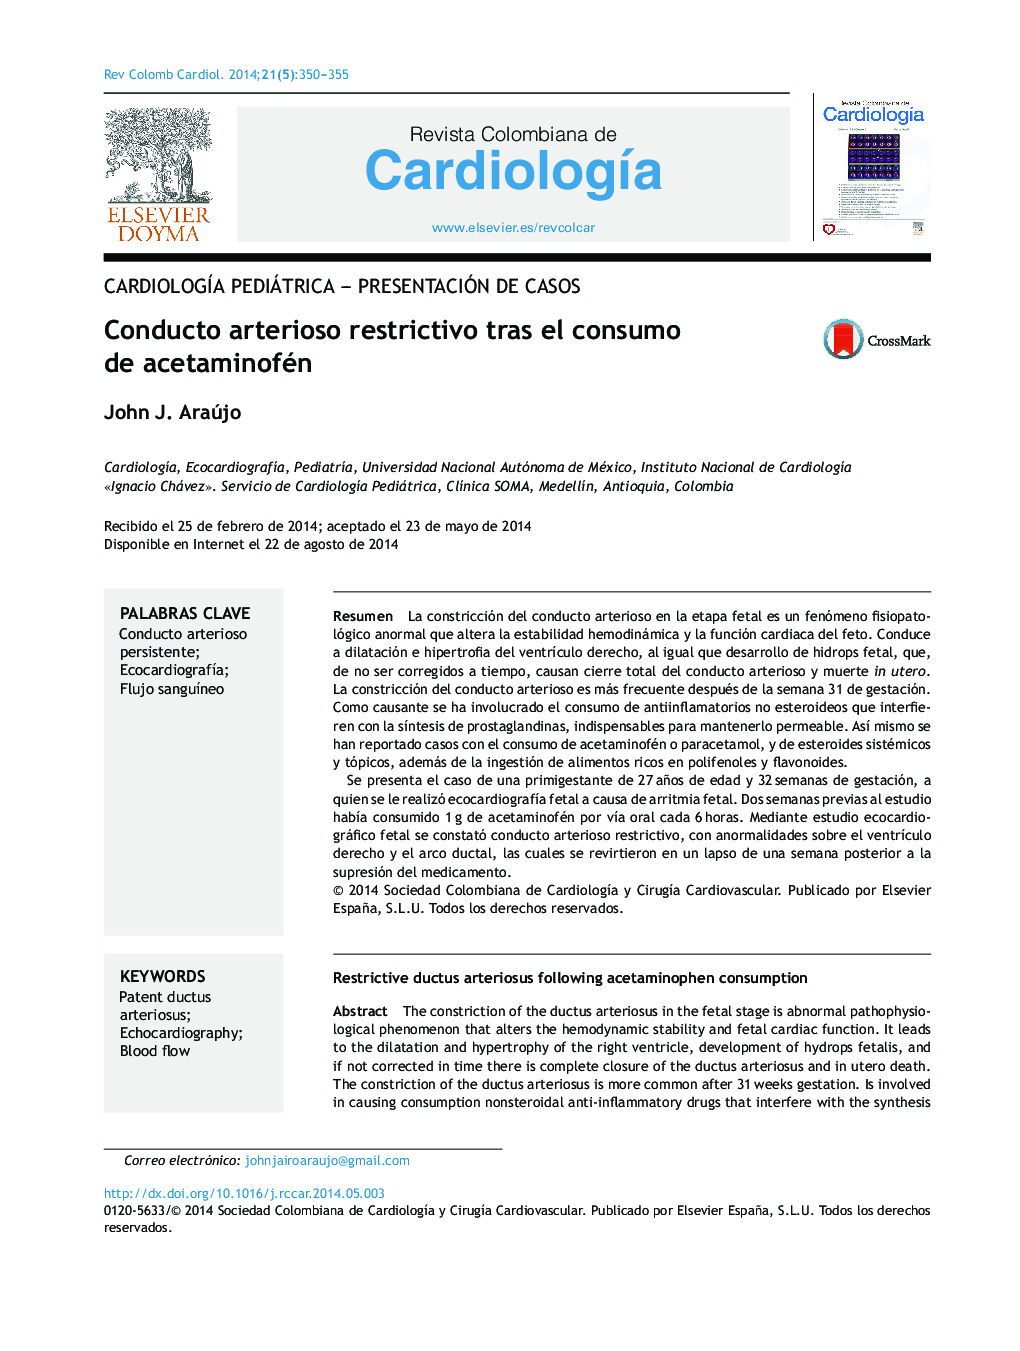 Conducto arterioso restrictivo tras el consumo de acetaminofén